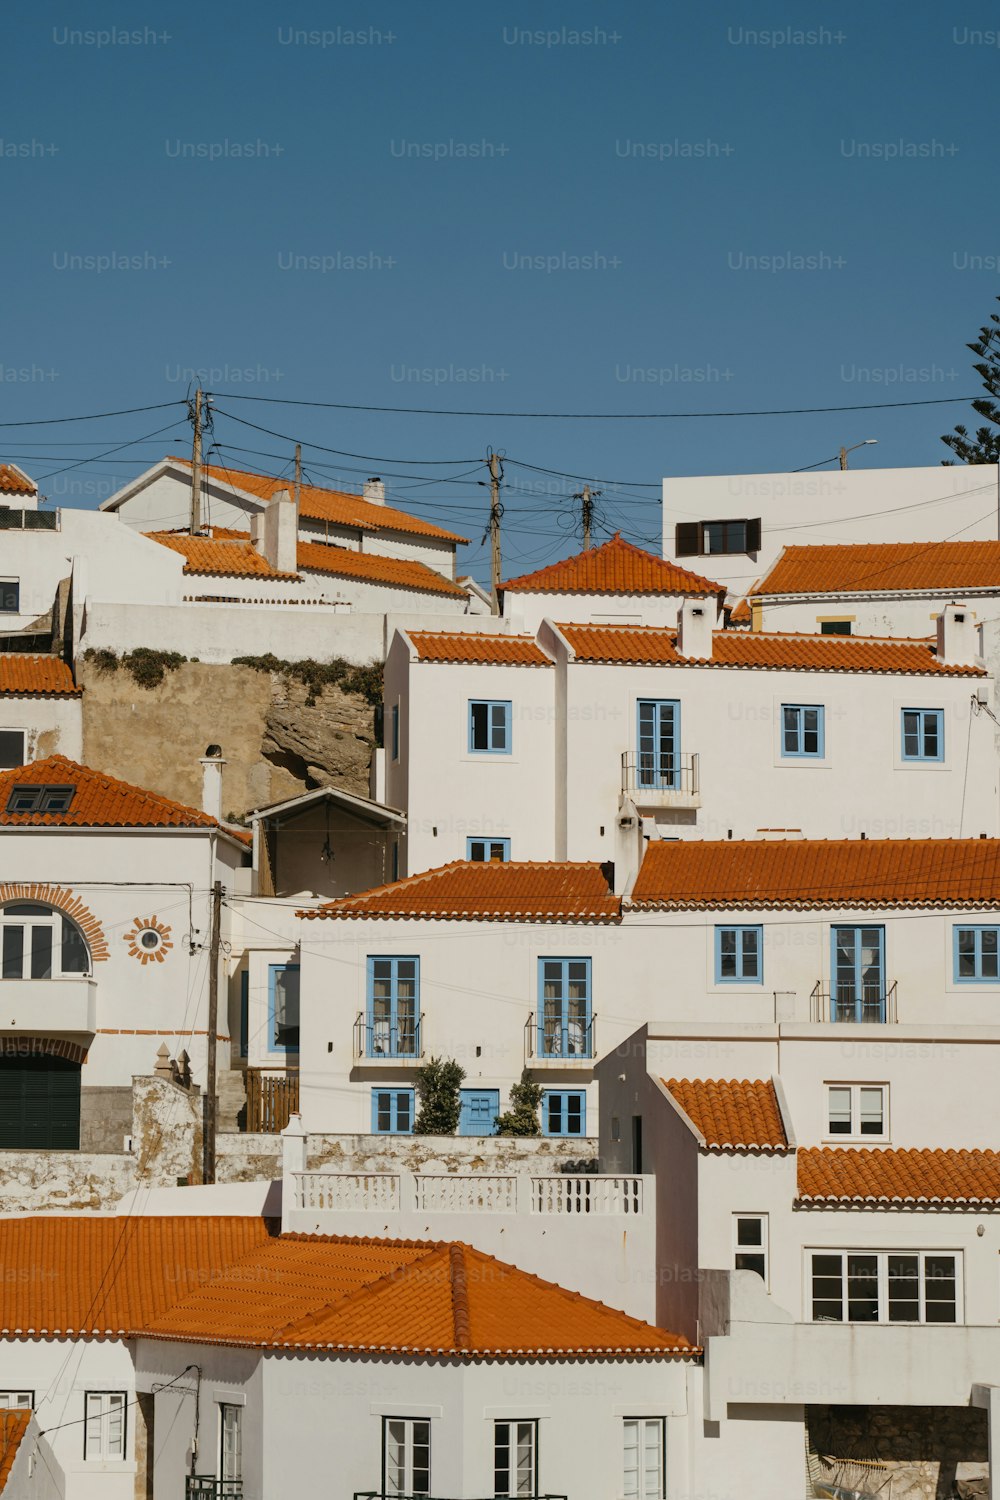 Un grupo de edificios blancos con techos naranjas